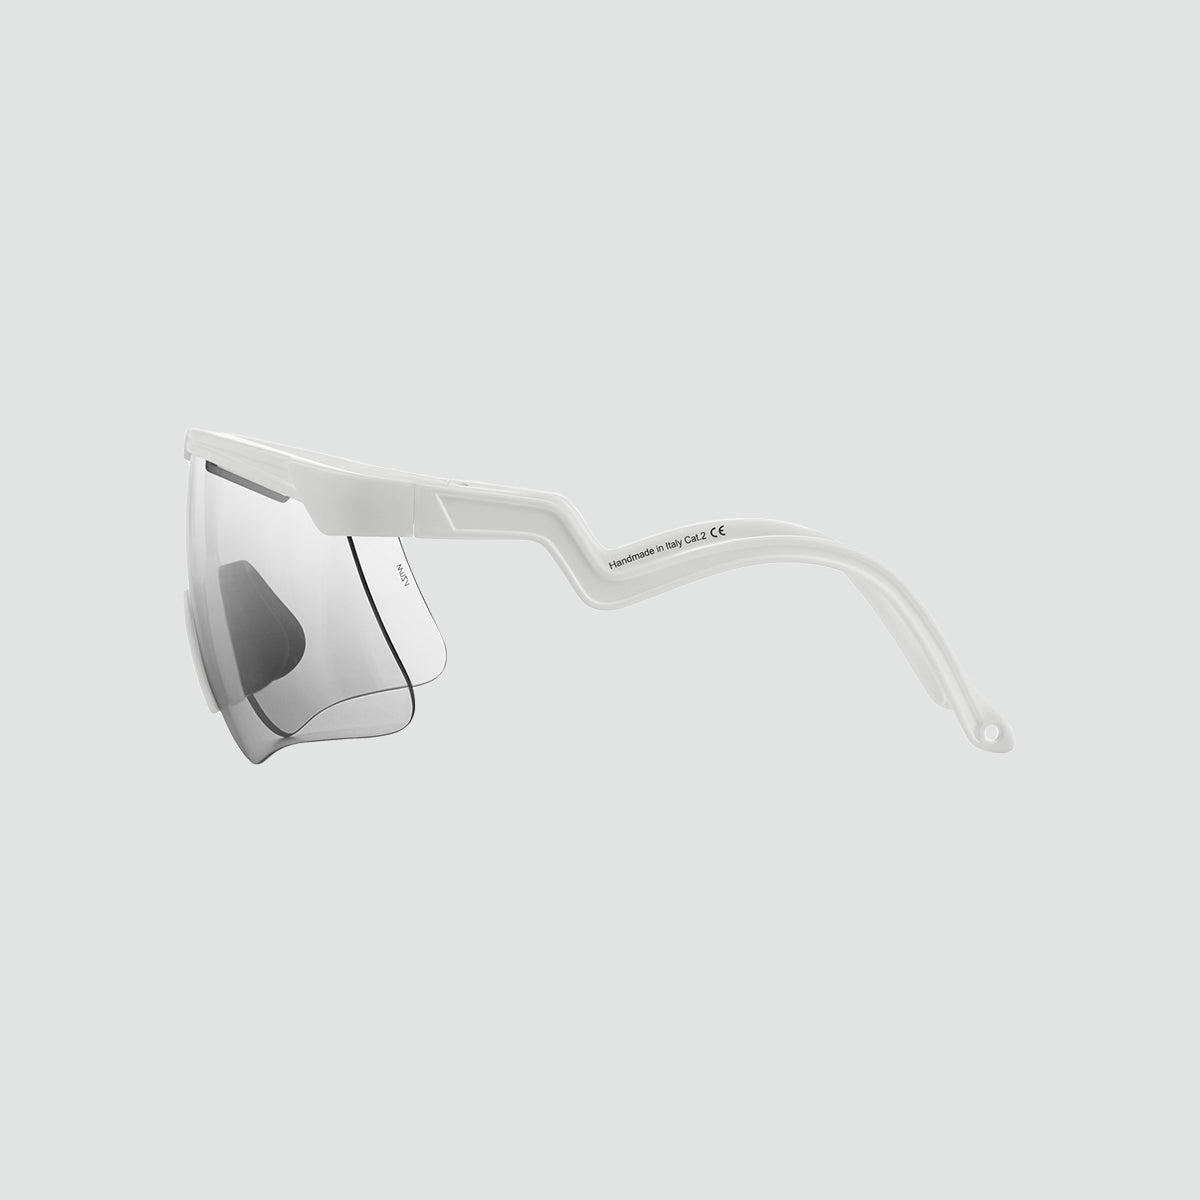 Delta Sunglasses - White VZUM™ F-LENS